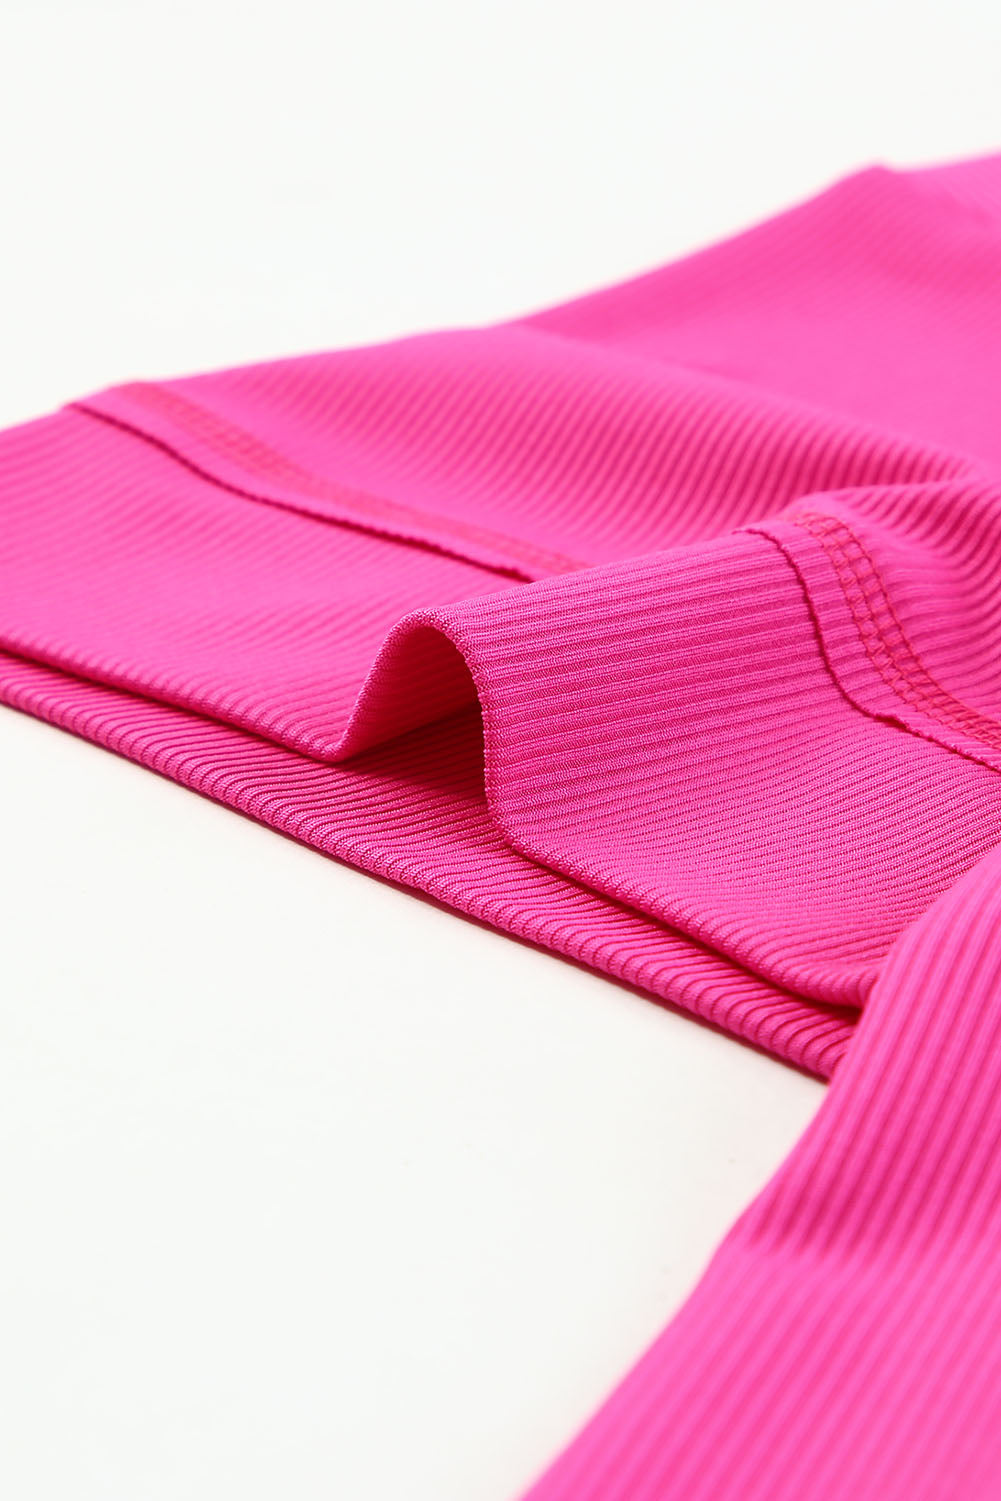 Ružičasta lepršava rebrasta majica s 3/4 rukavima veće veličine